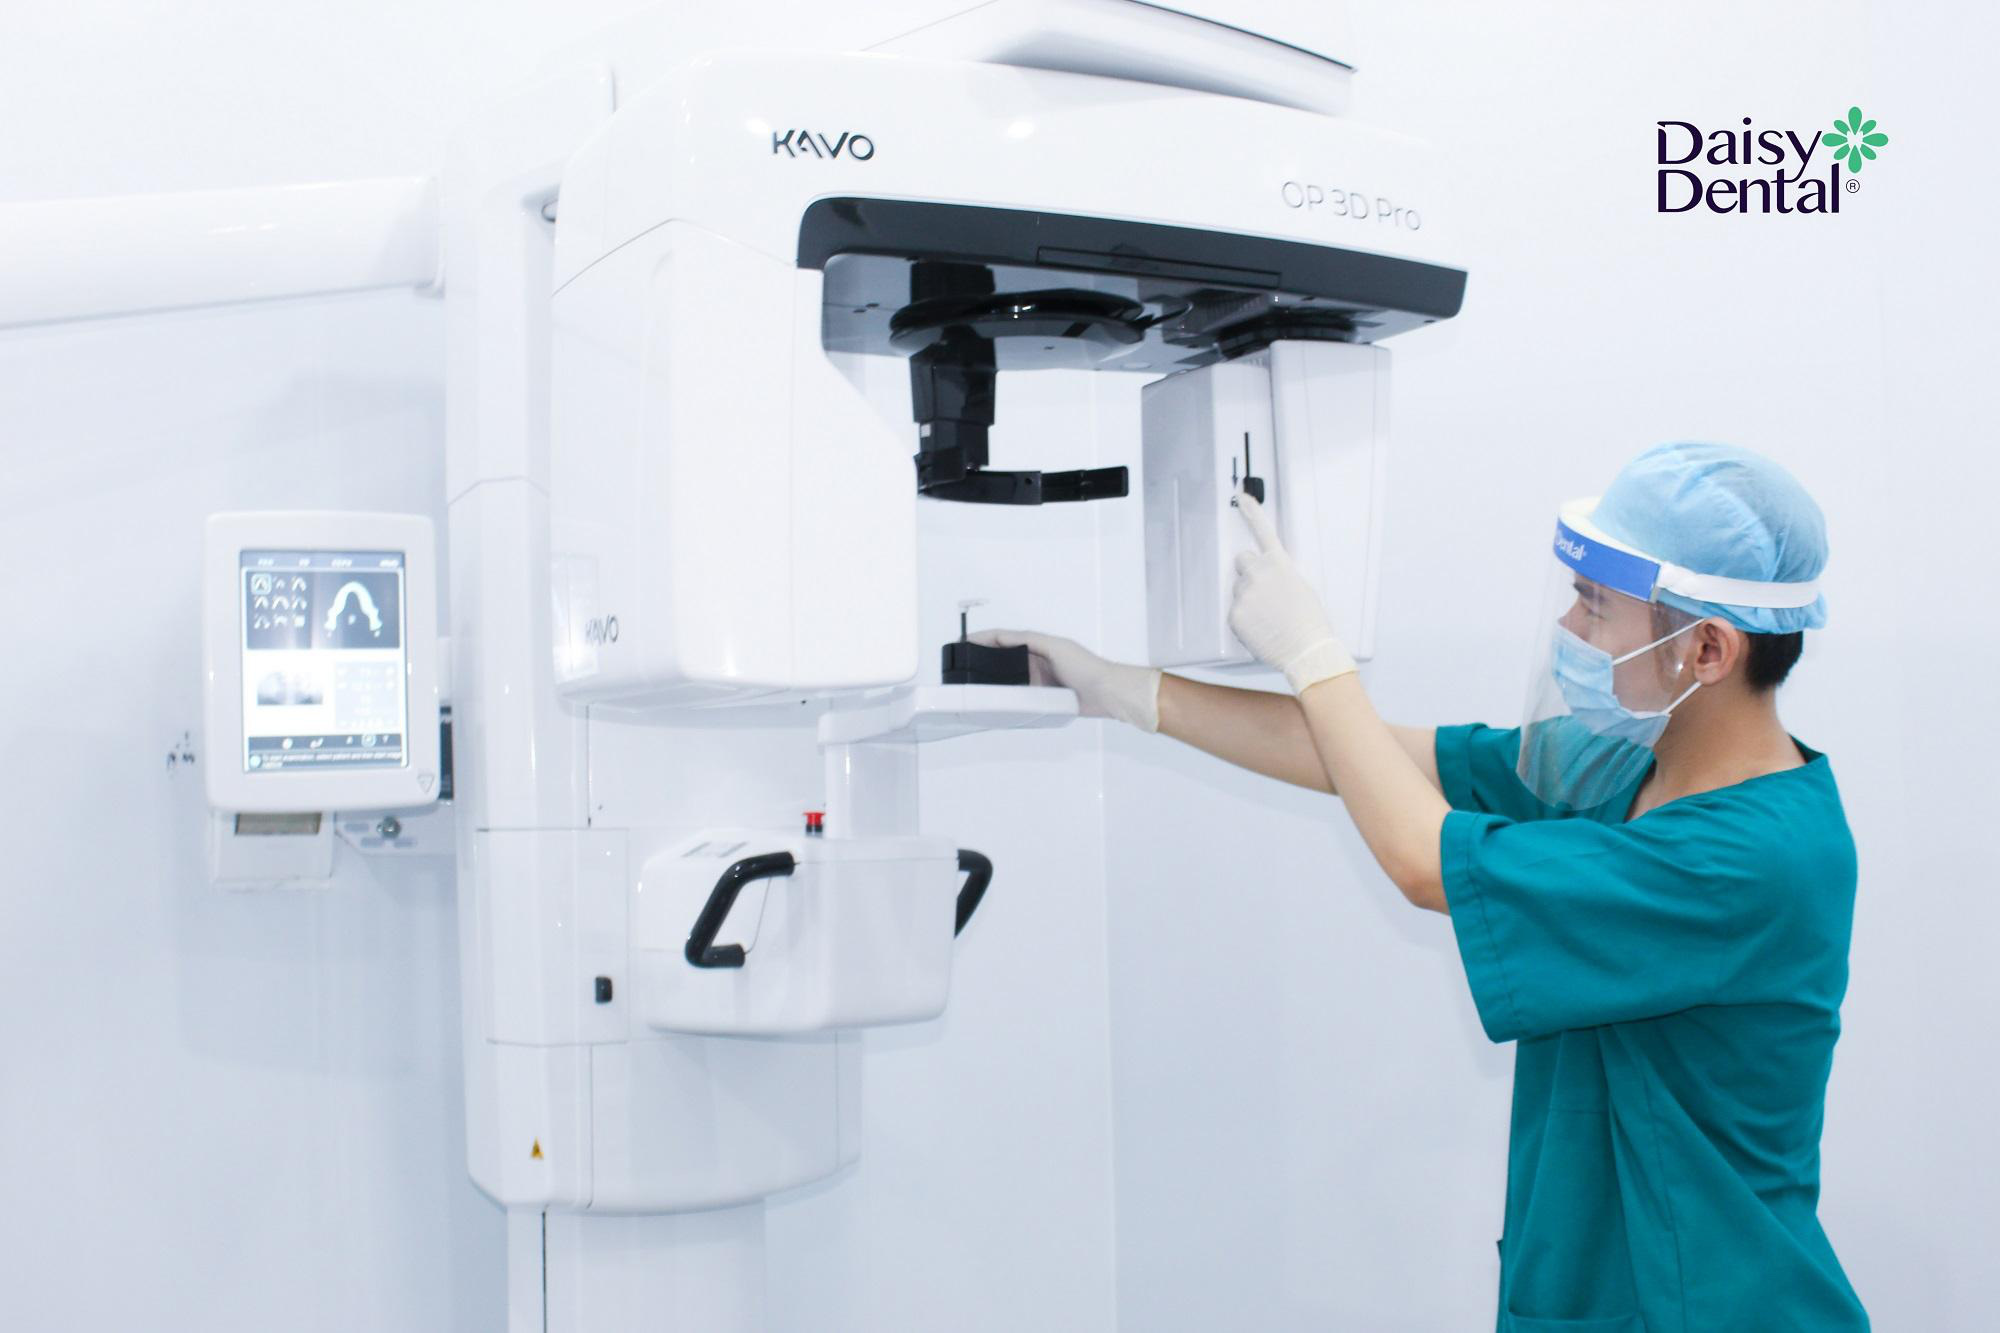 Nha khoa Quốc tế Daisy tiếp nhận chuyển giao công nghệ chẩn đoán hình ảnh CT KaVo OP 3D Pro - Ảnh 4.